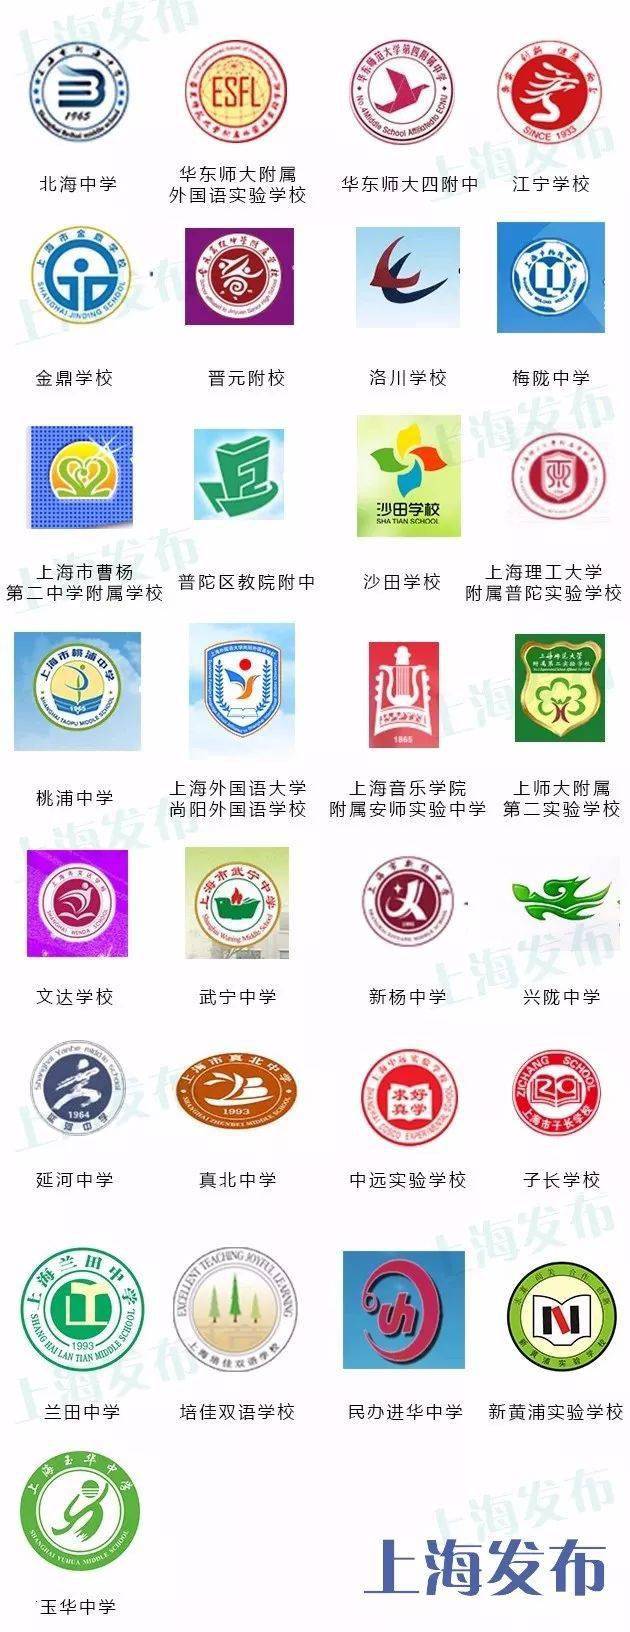 汇总上海383所初中校徽合集能找到你的学校吗